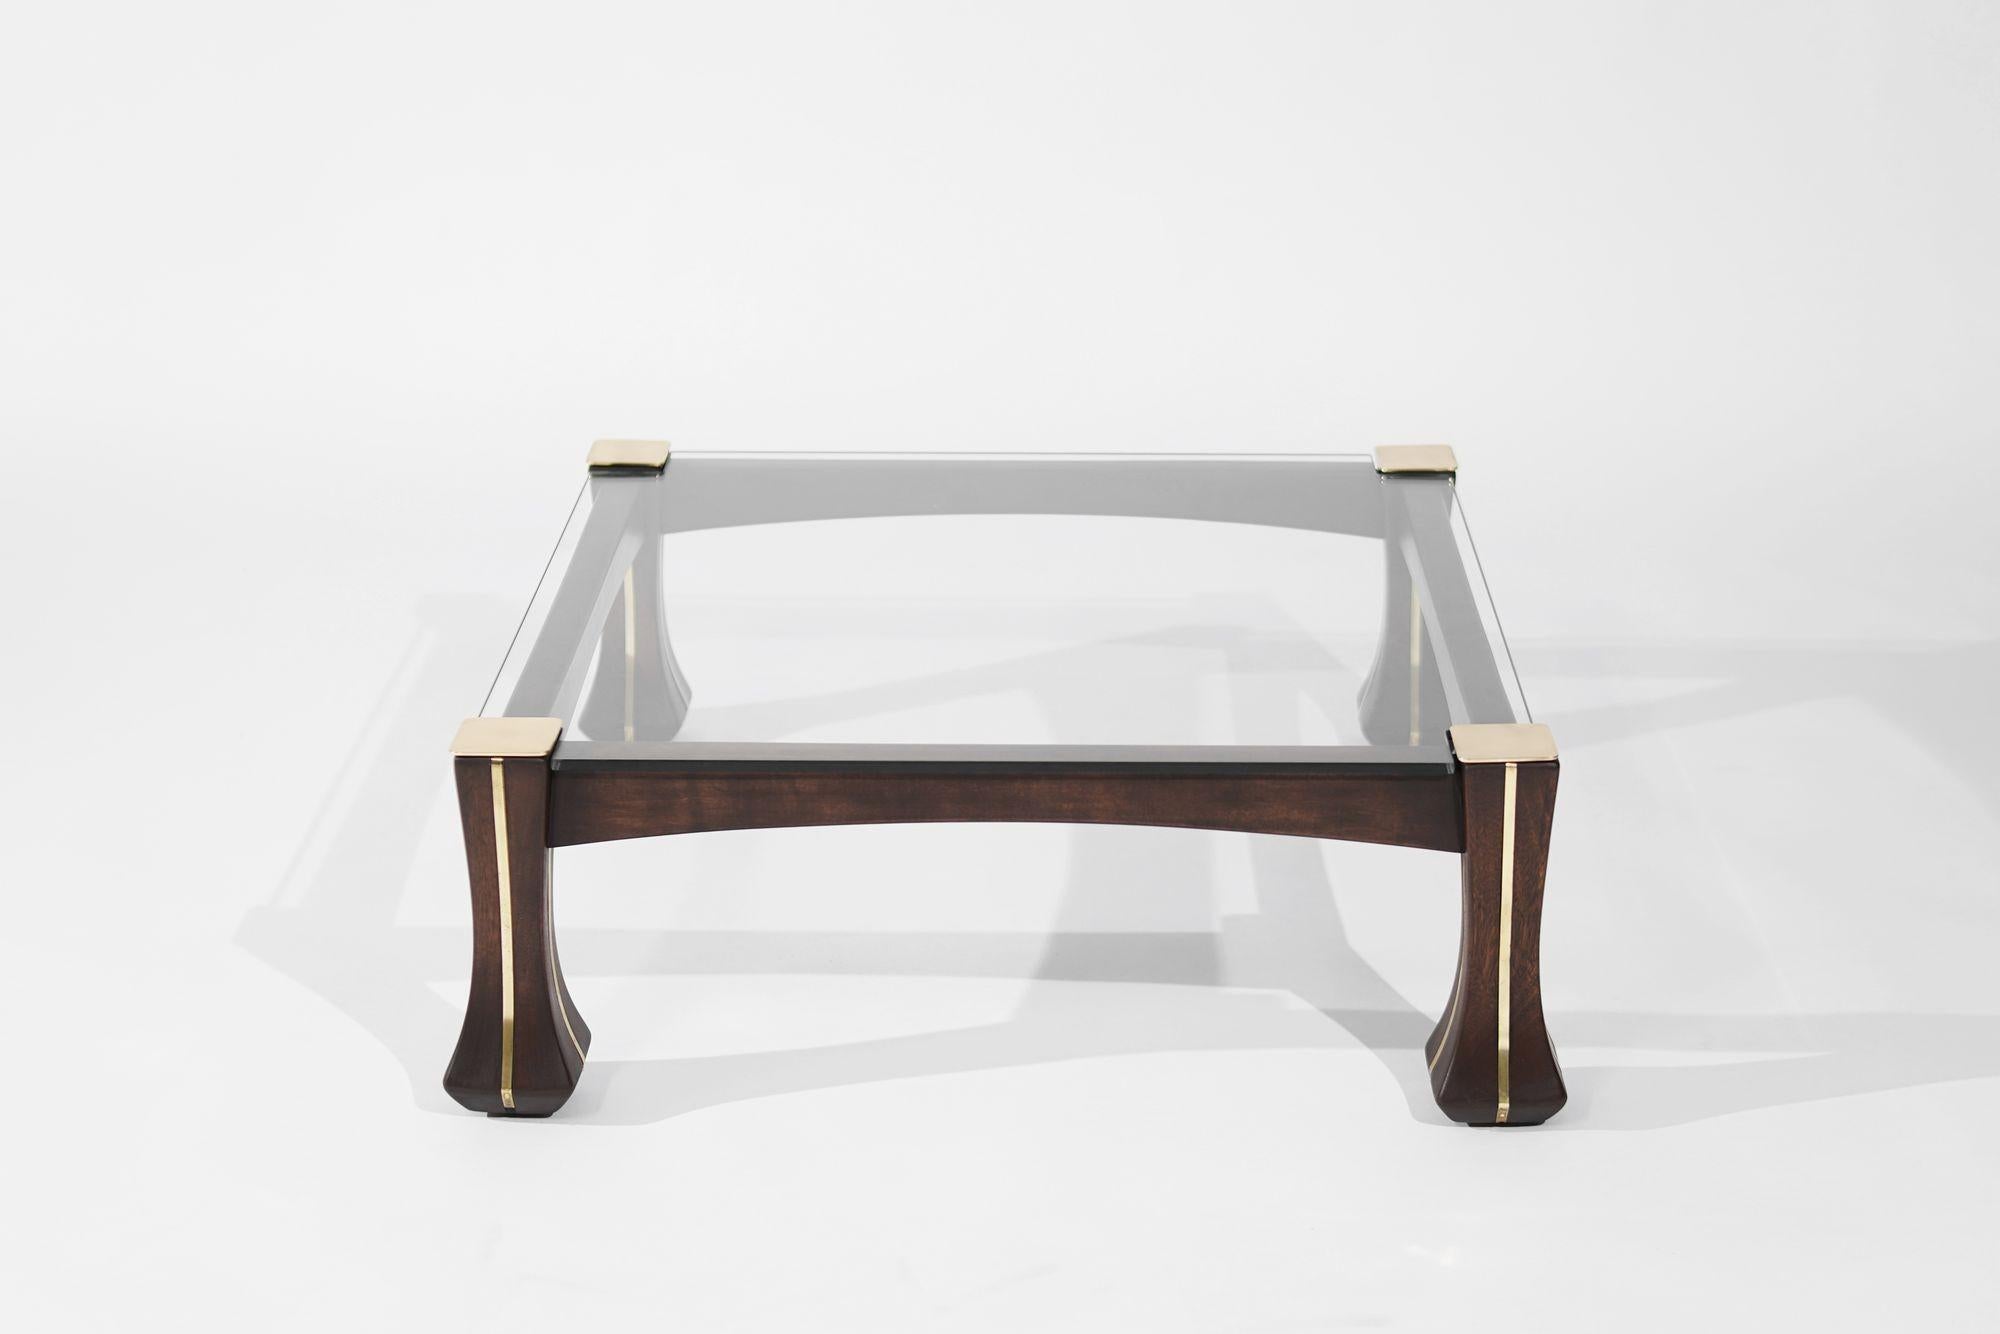 Table basse vintage entièrement restaurée, datant des années 1970 en Italie, conçue par Luciano Frigerio. Cette pièce élégante présente de l'acajou, des accents en laiton incrusté et un plateau en verre. Avec son mélange de matériaux et son